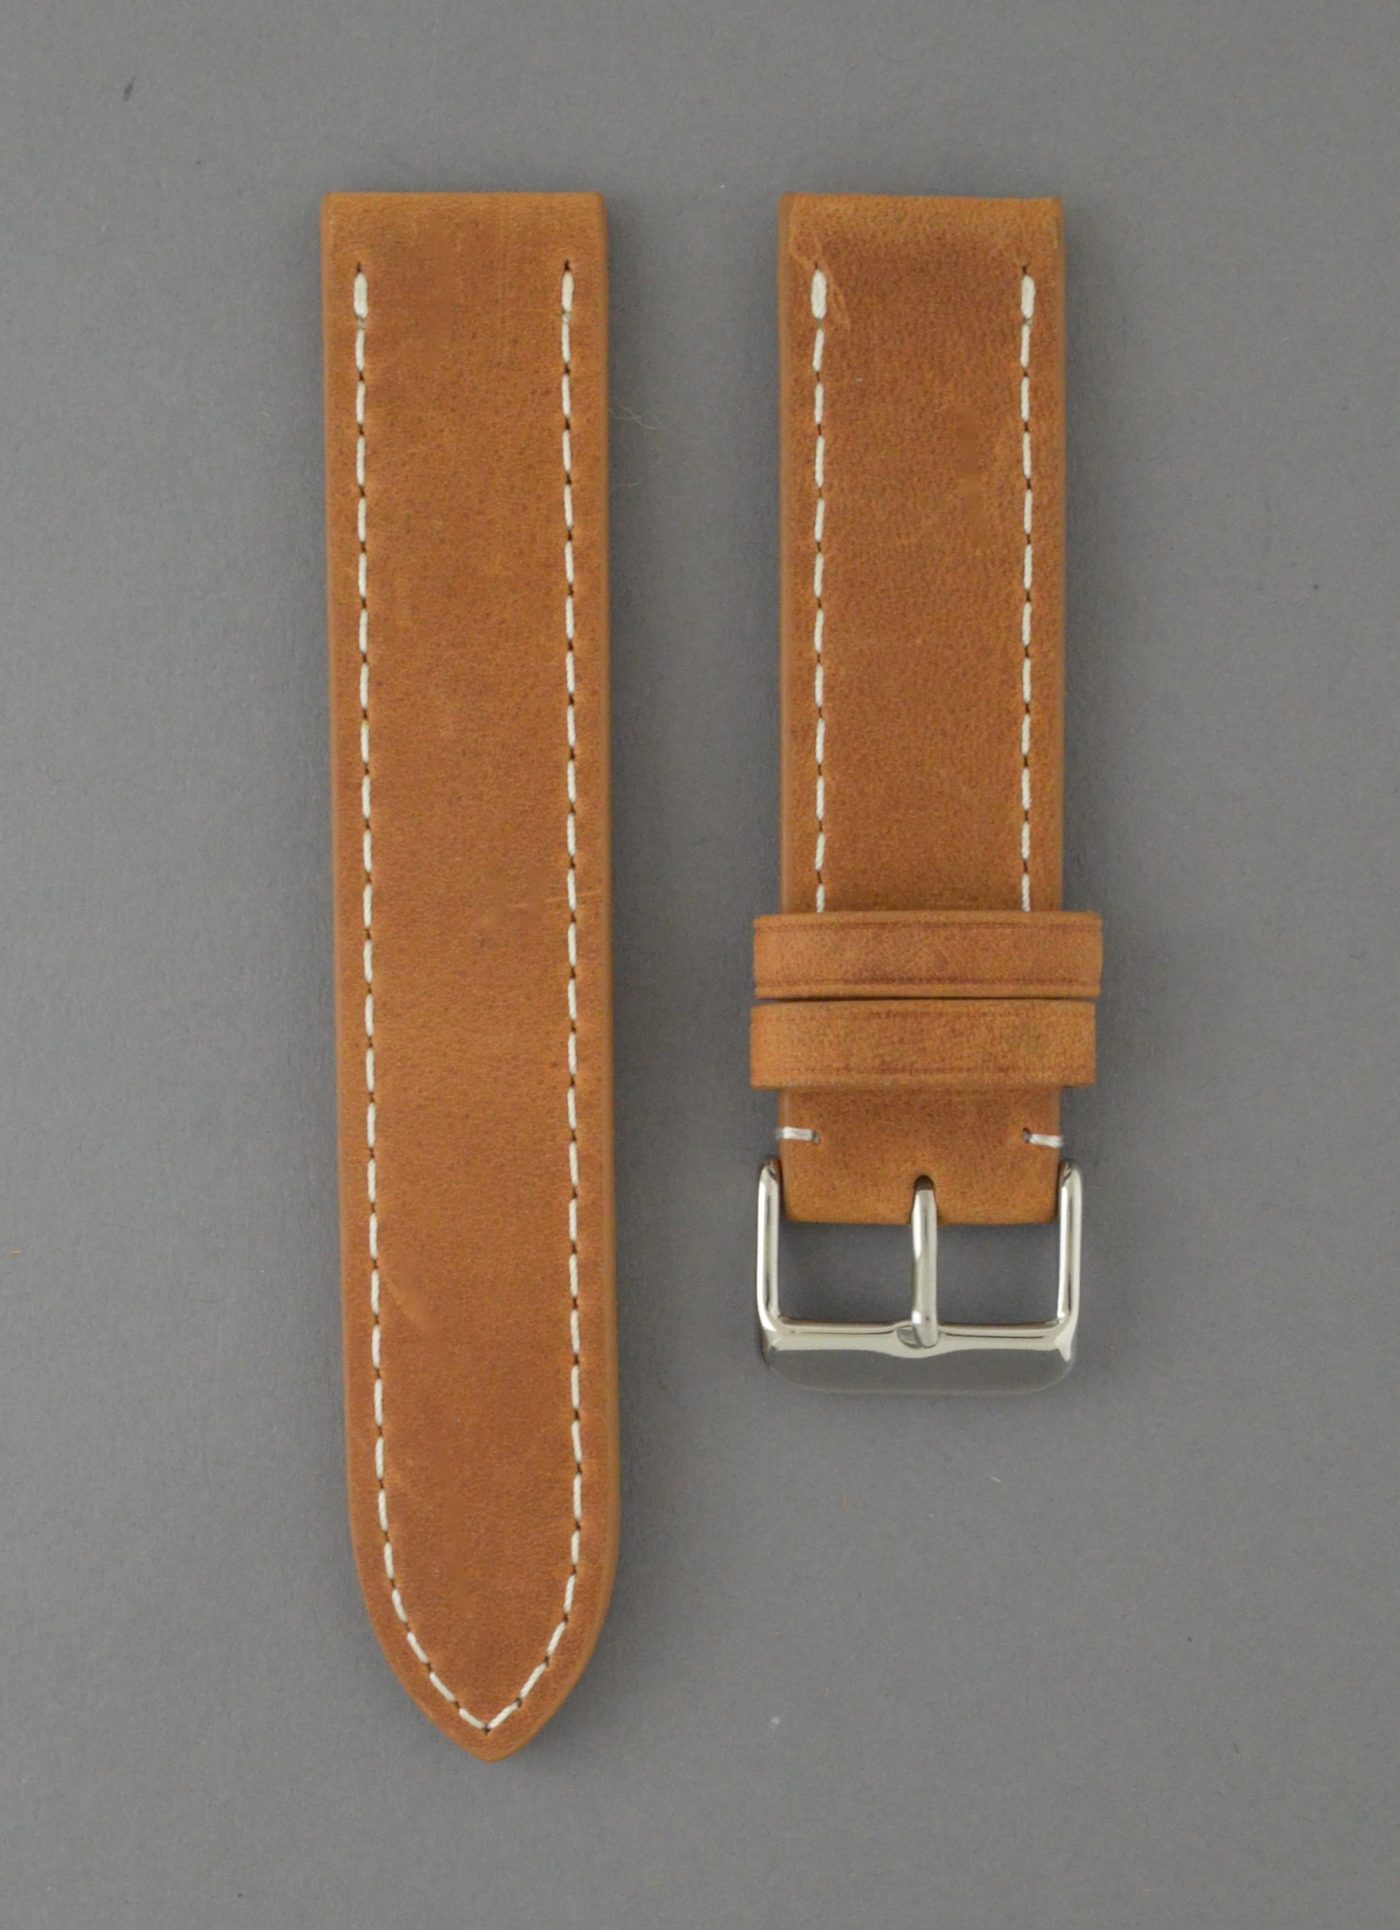 BC3-1 麂皮風格平身牛皮錶帶 - 棕色搭白色縫線